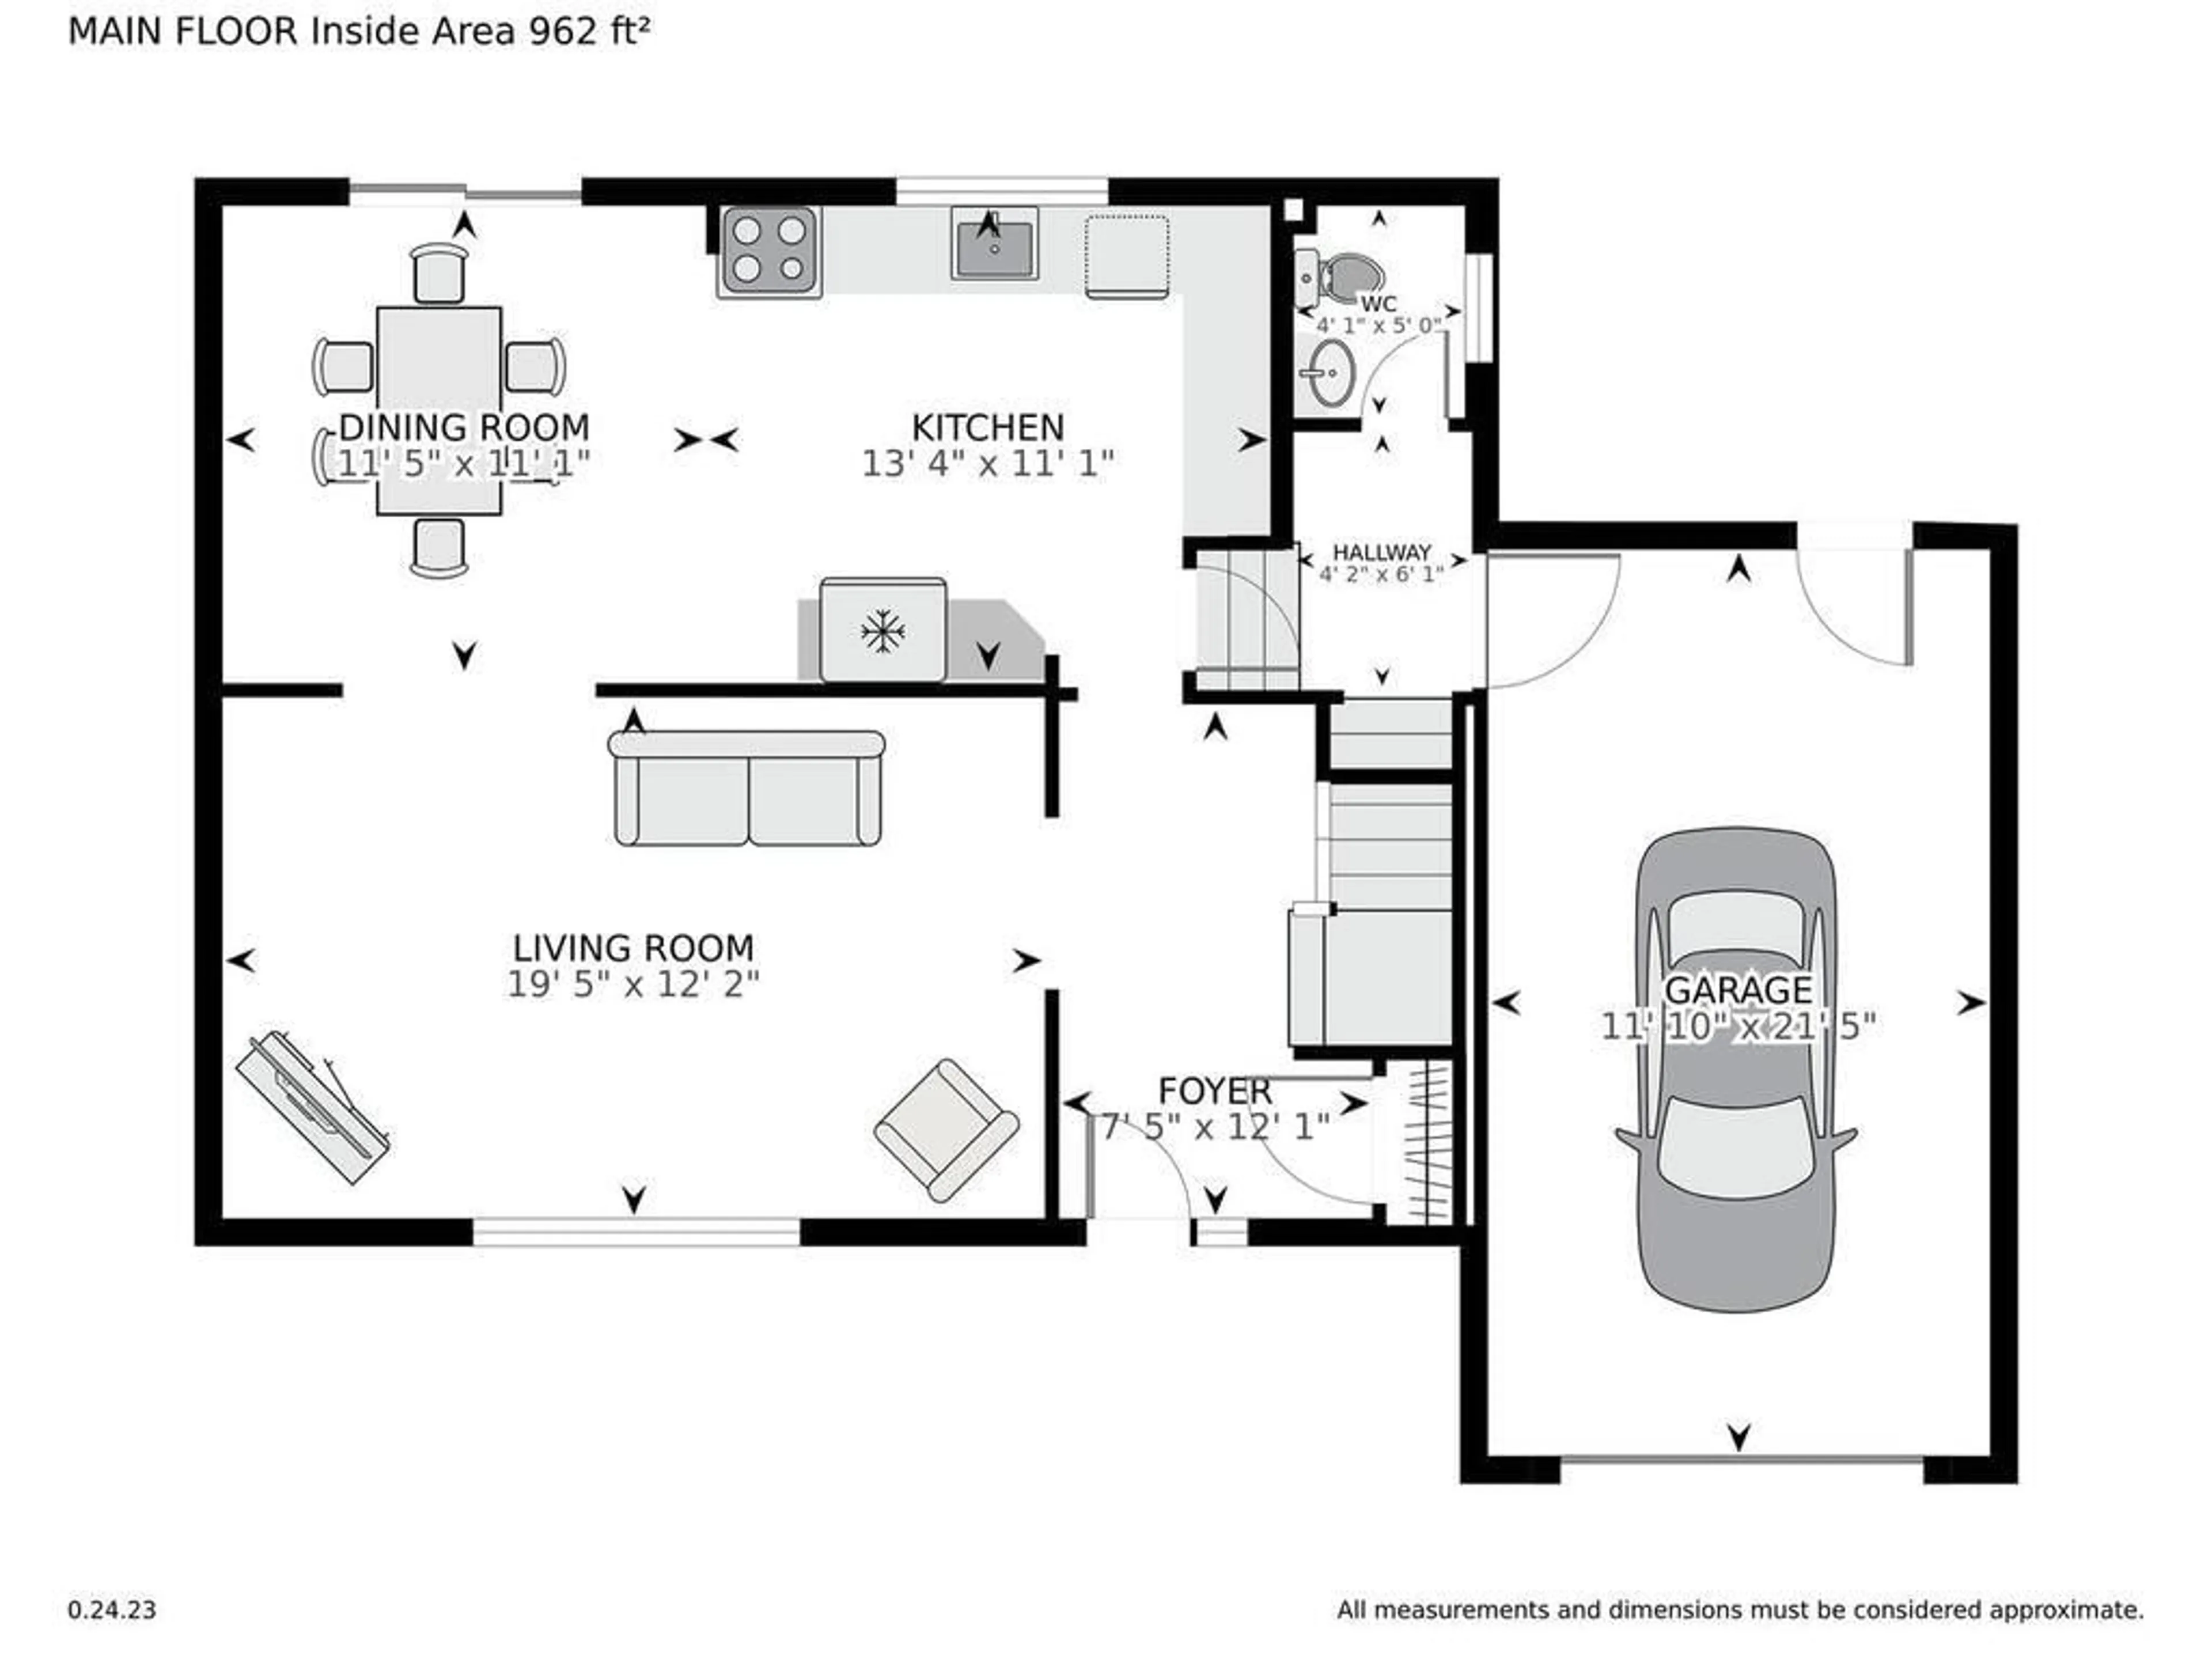 Floor plan for 1362 LINDEN Cres, Brockville Ontario K6V 6B6